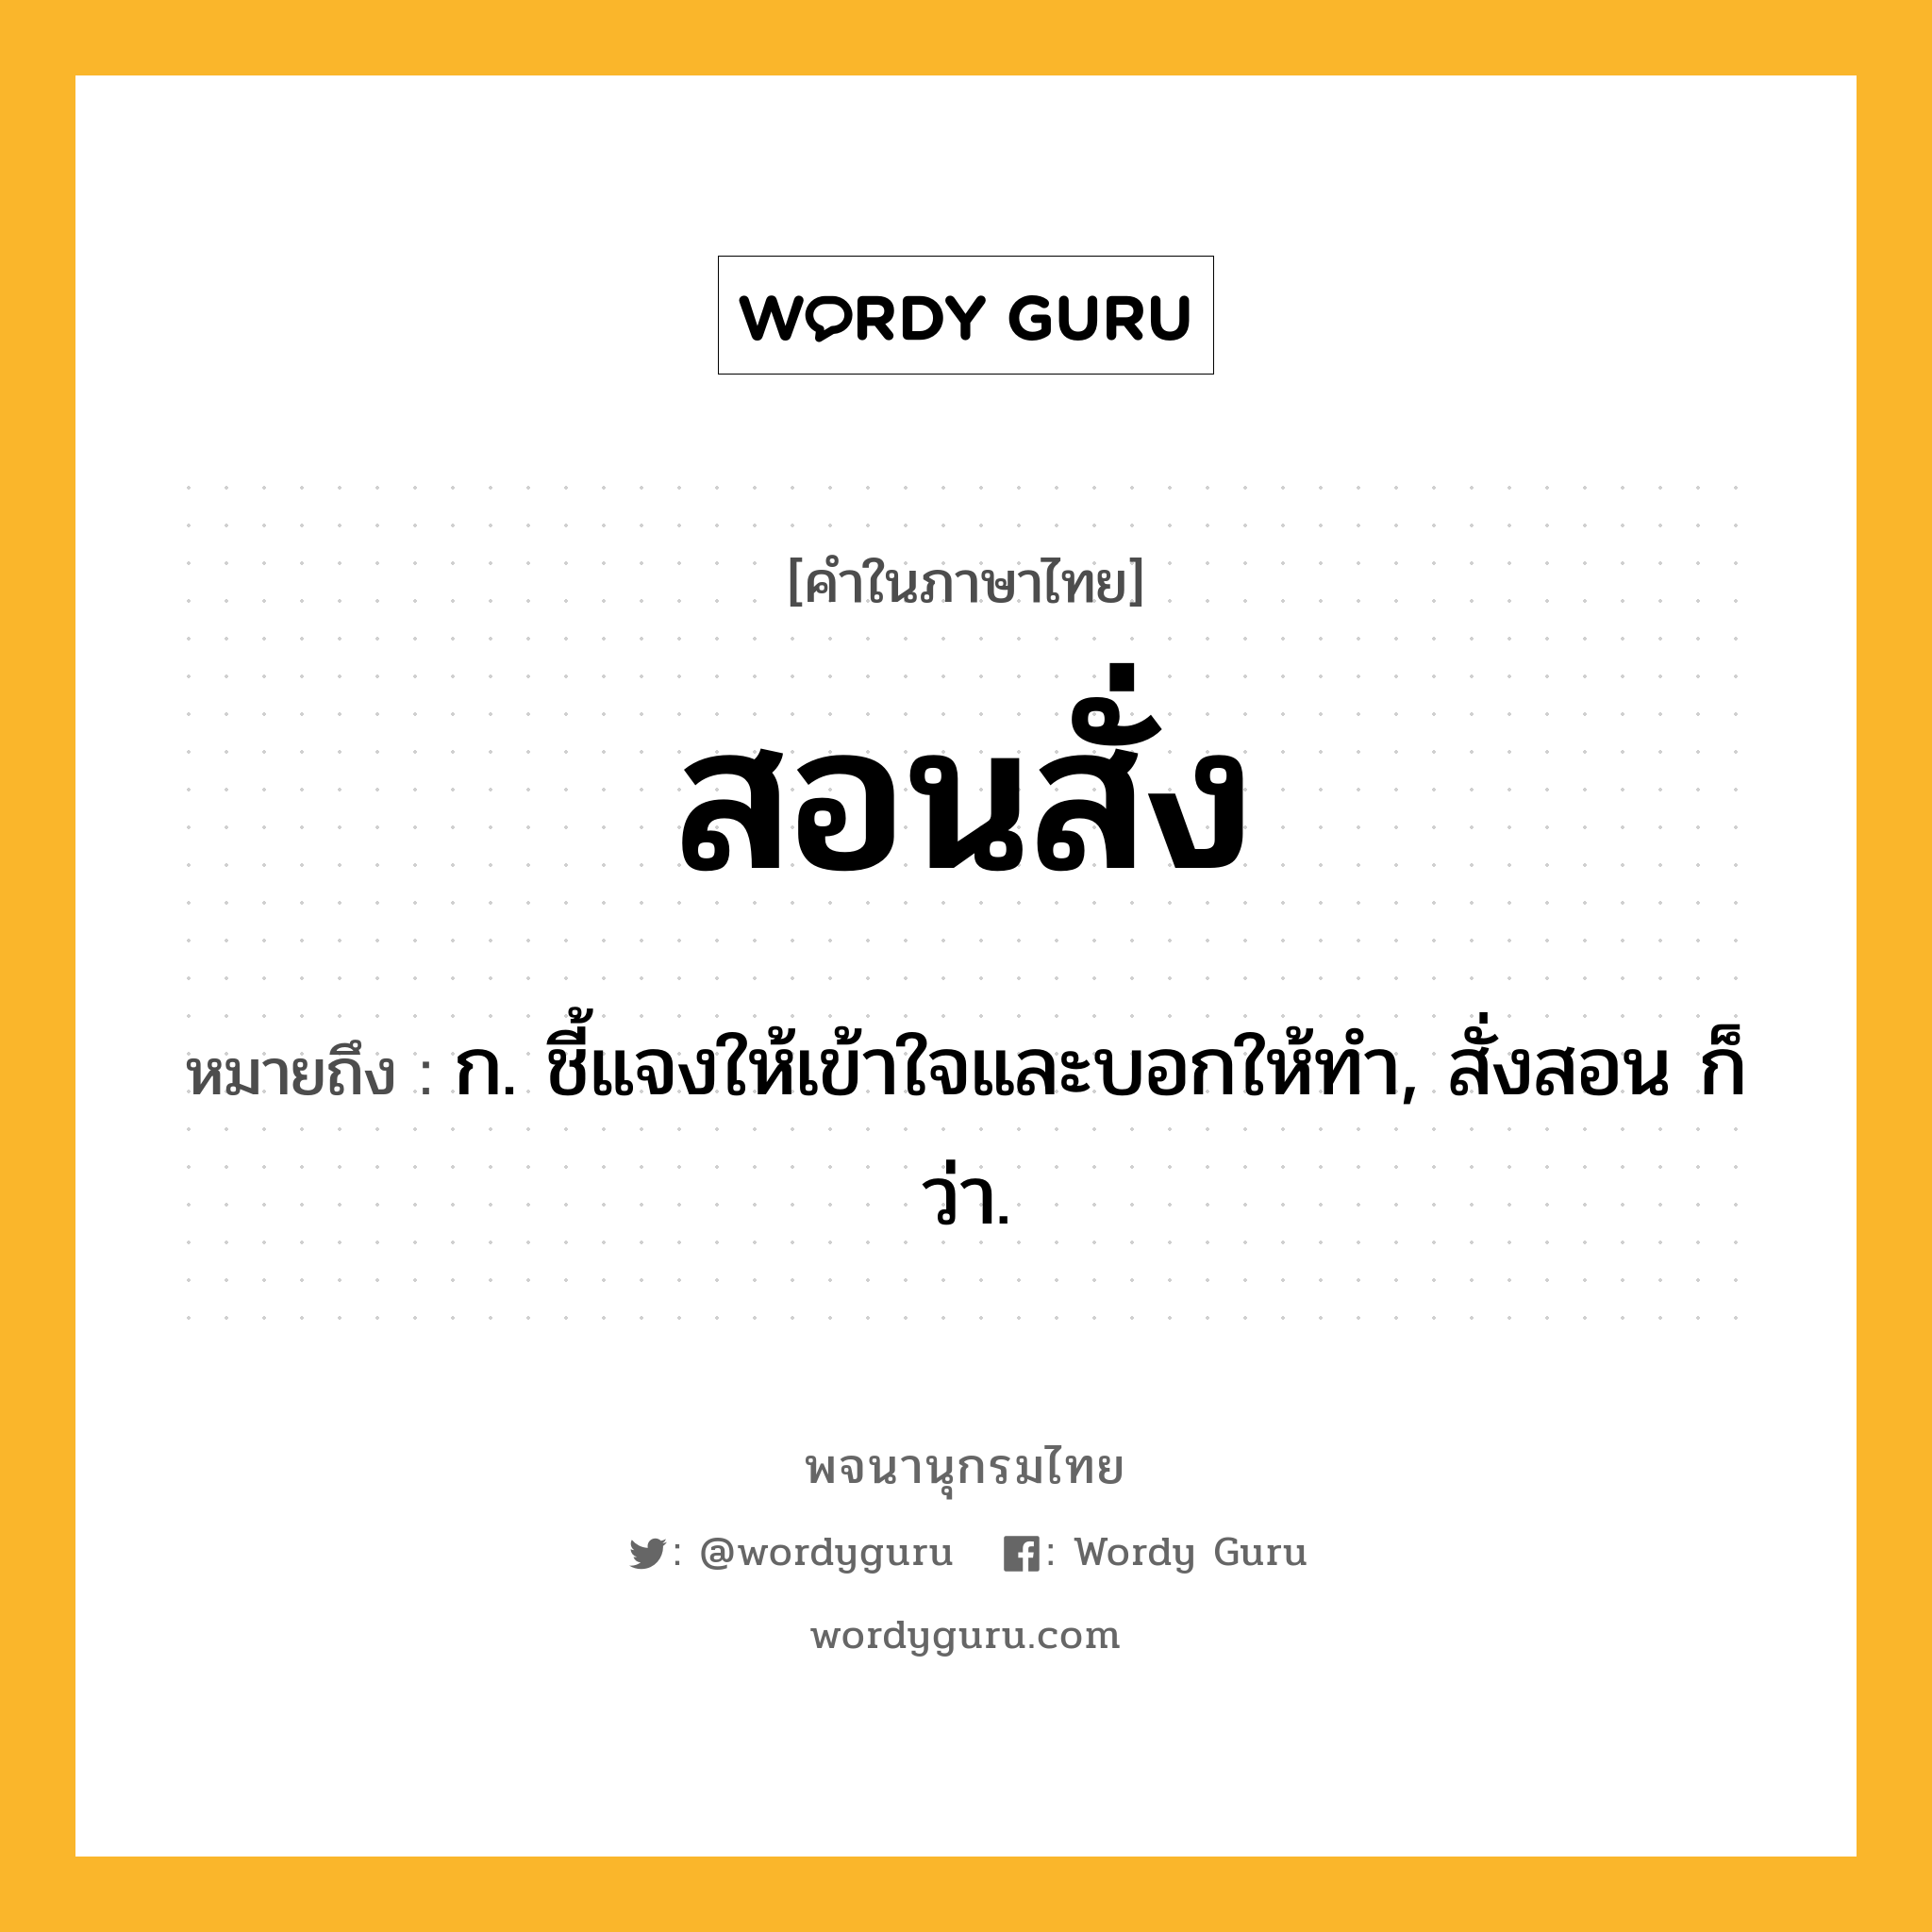 สอนสั่ง ความหมาย หมายถึงอะไร?, คำในภาษาไทย สอนสั่ง หมายถึง ก. ชี้แจงให้เข้าใจและบอกให้ทำ, สั่งสอน ก็ว่า.